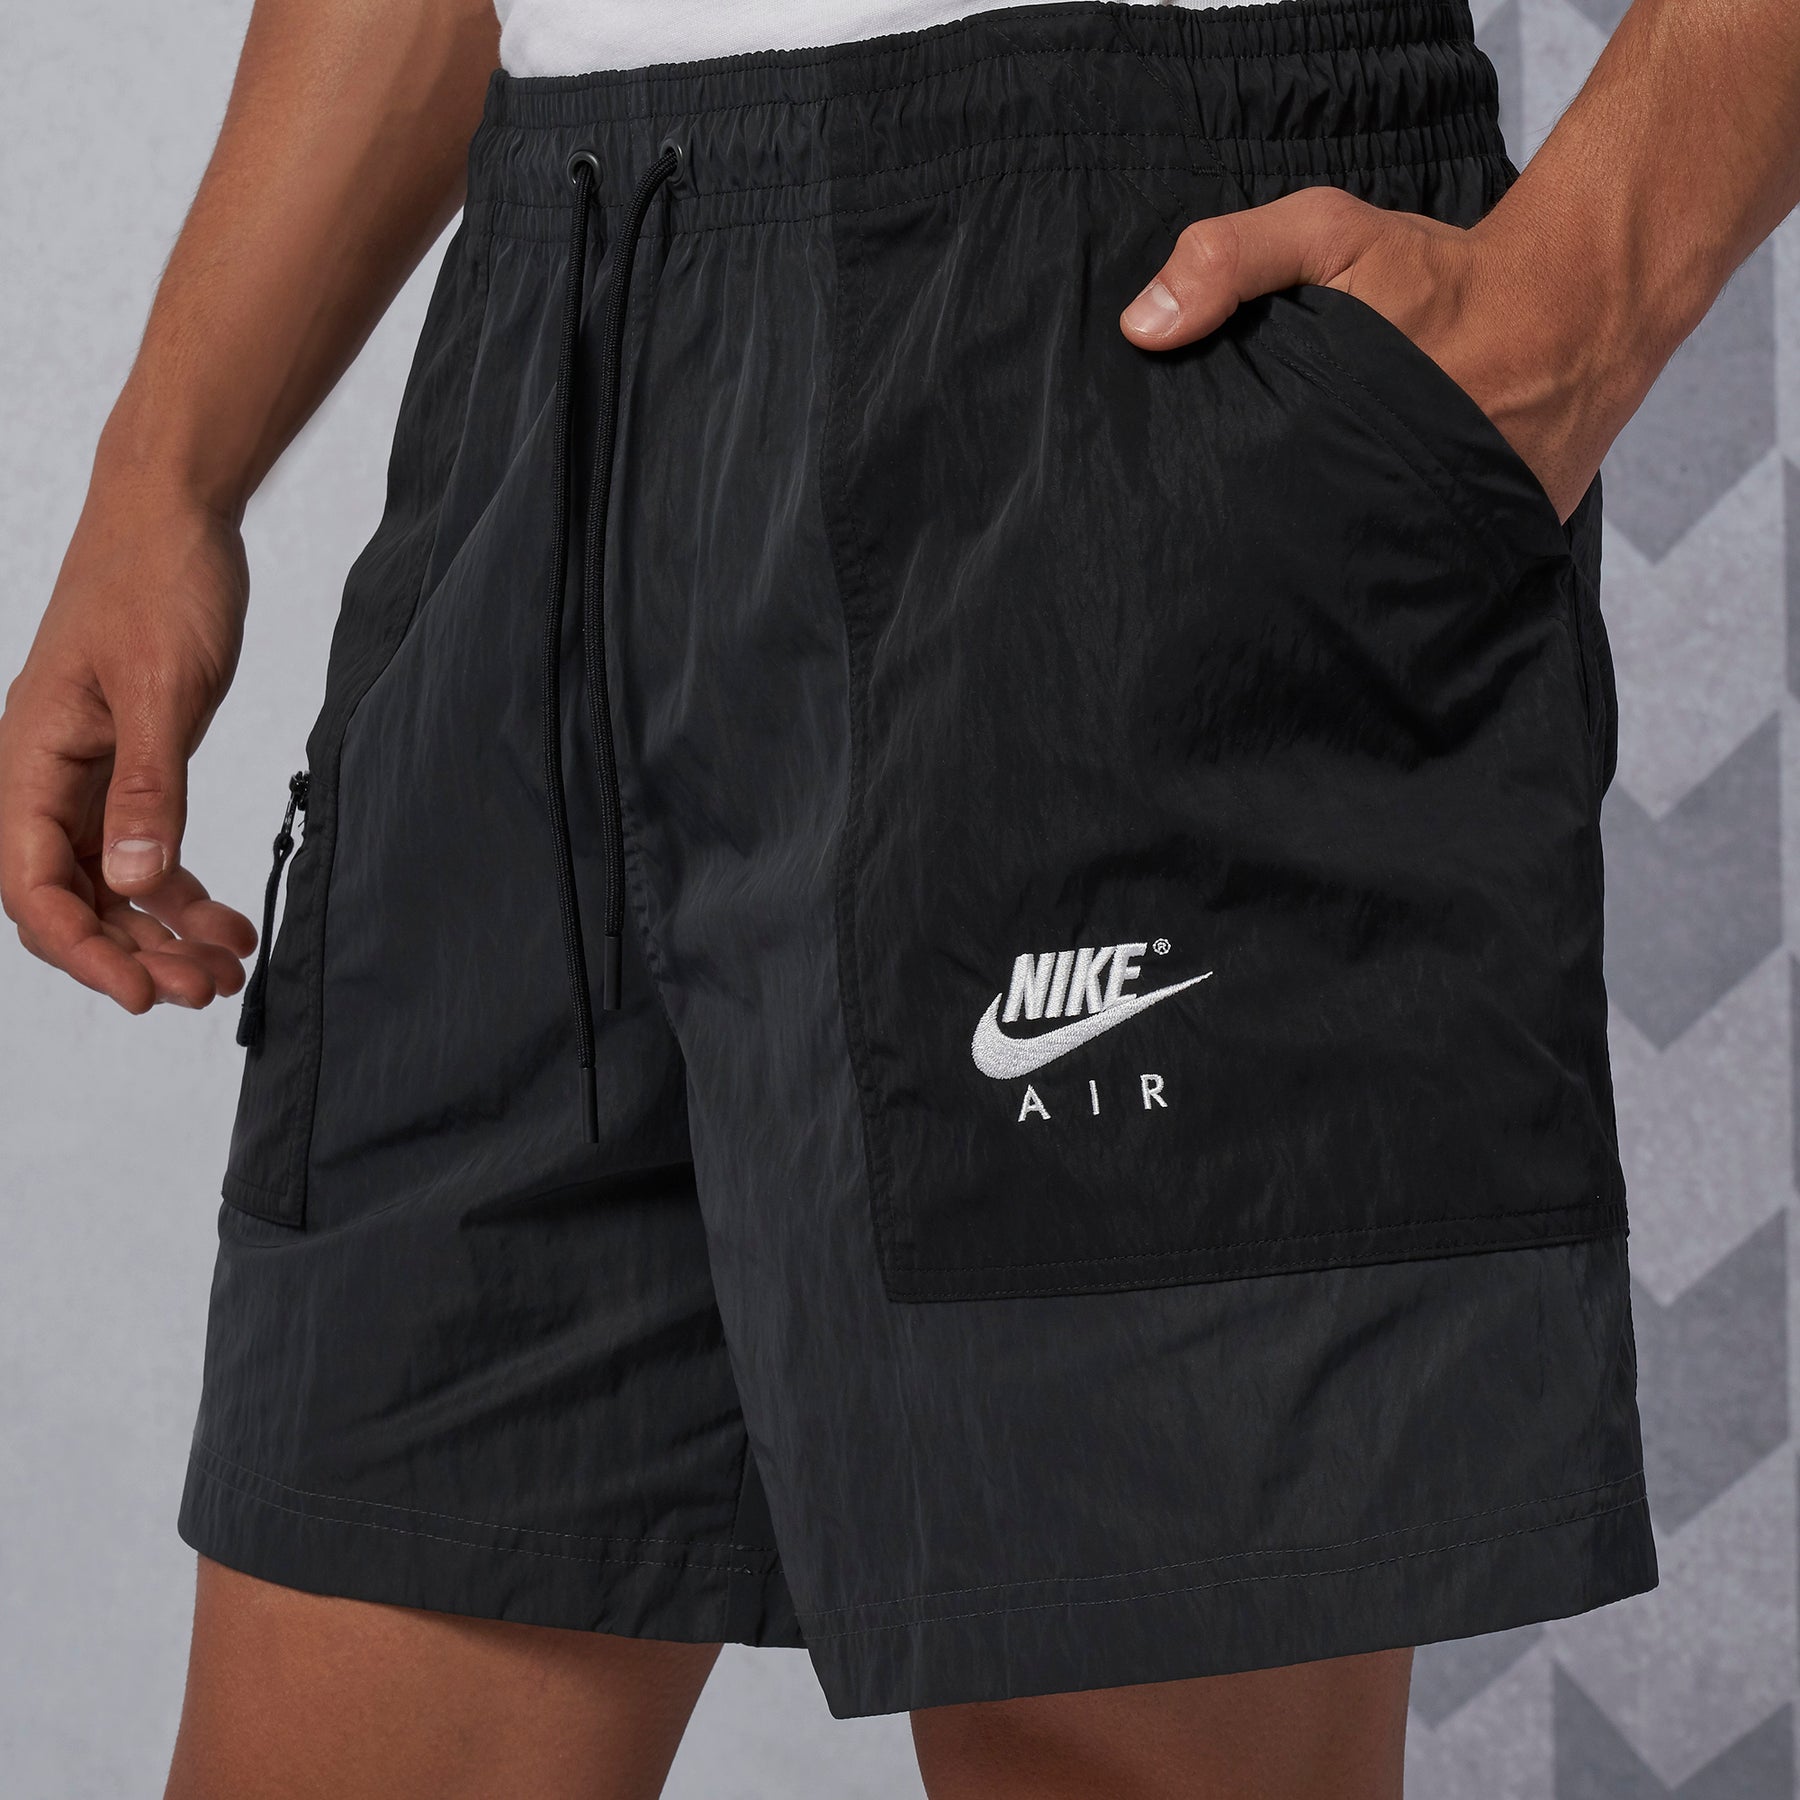 Nike Air Shorts | Dropkick